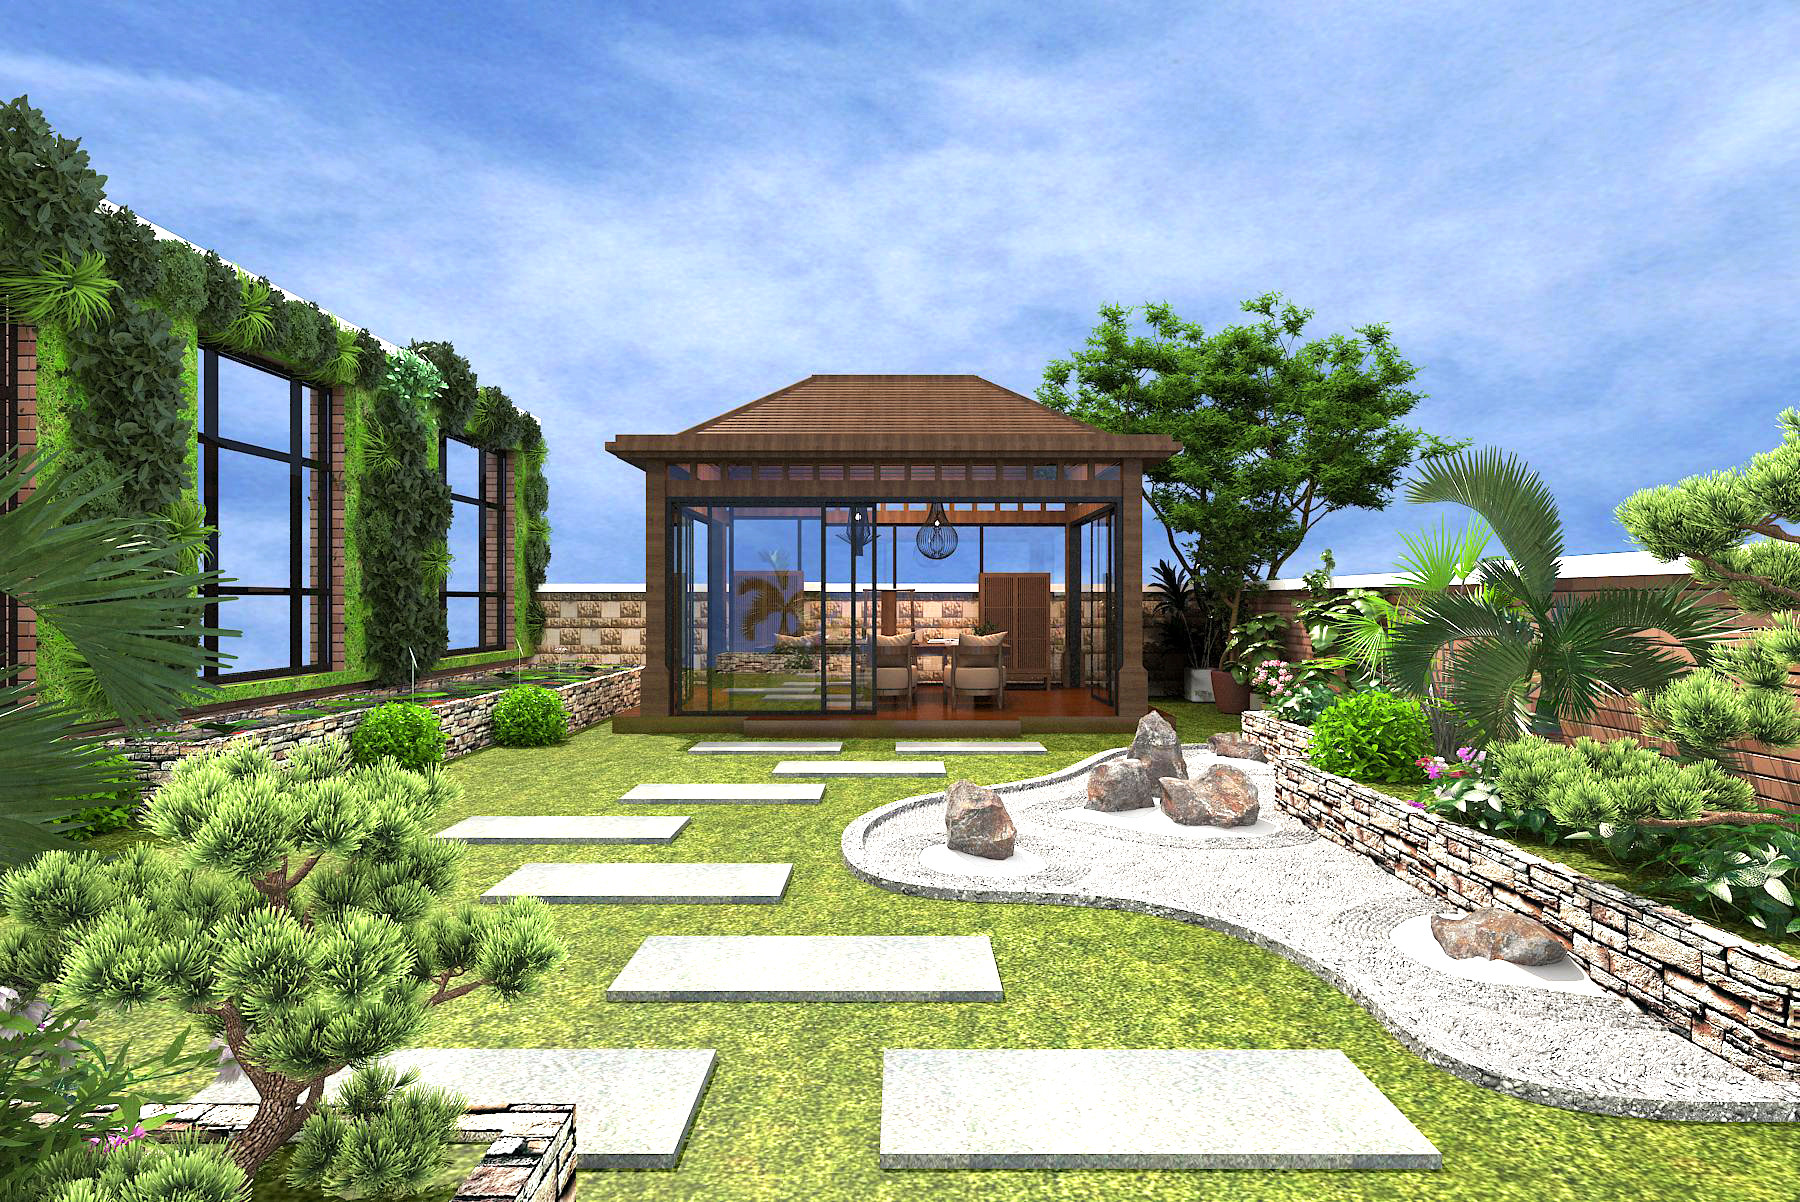 08中式凉亭,庭院,植物,假山,围墙,桌椅3d模型下载